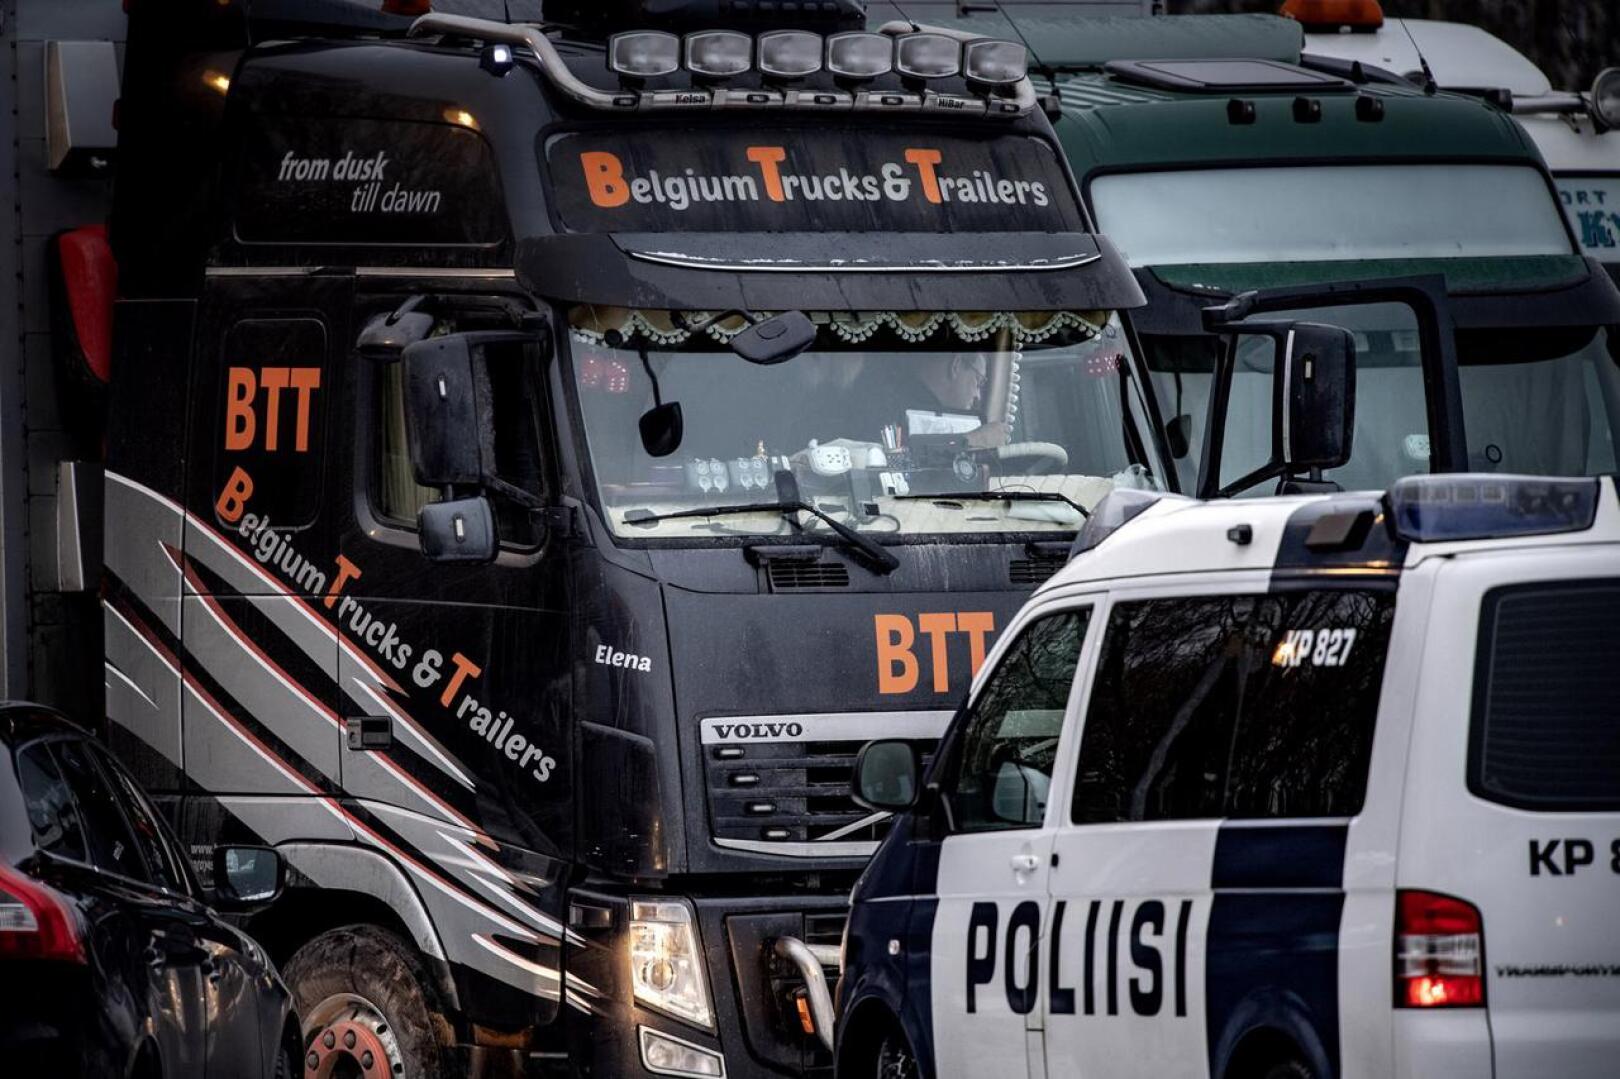 Liettualaisten kuljetusrekkojen lisäksi kokkolalaisen huoltoaseman pihassa oli torstaina myös kymmenittäin turkistarhaajia sekä poliiseja tarkastamassa eläinkuljetusautoa ajavien kuskien tarvittavia lupia.